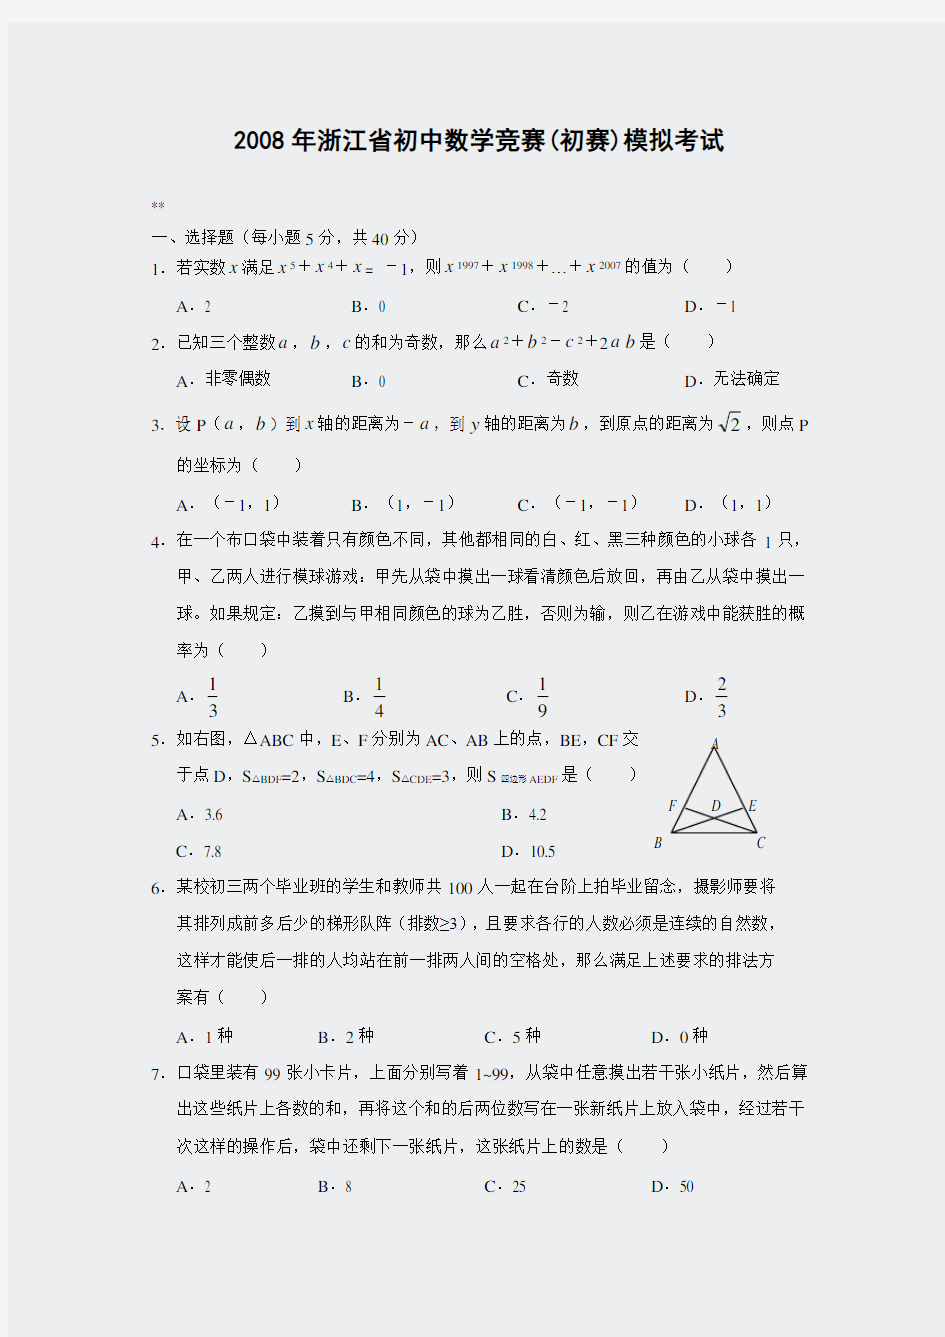 奥数-2008年浙江省初中数学竞赛(初赛)模拟考试题(含答案)-